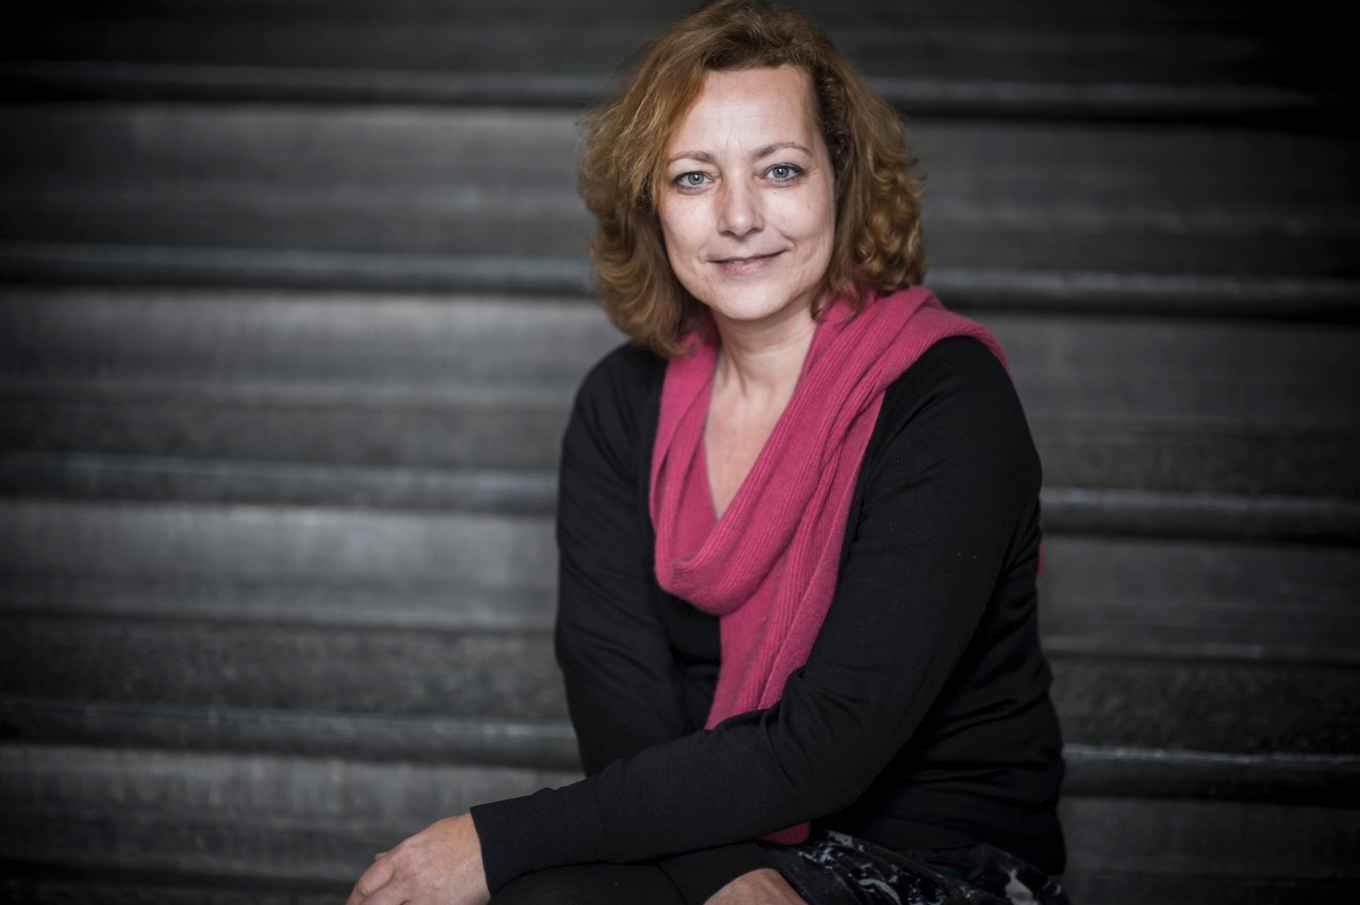 mw. prof. dr. Mireille van Eechoud, hoogleraar FdR, Informatierecht